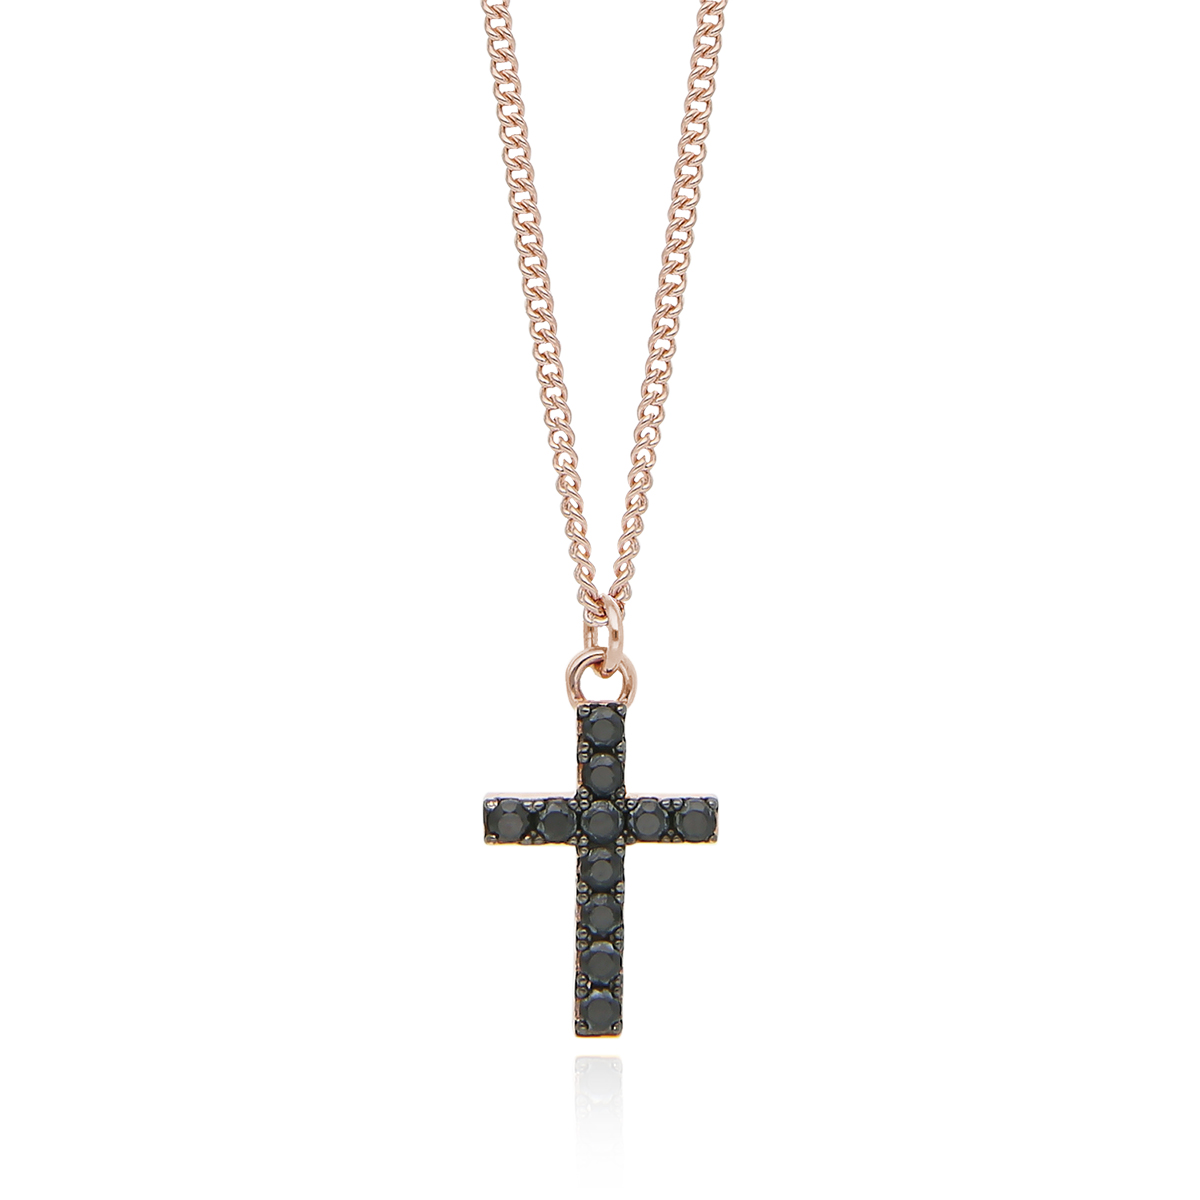 Collana lunga Mabina in argento rosato croce con zirconi neri 553371